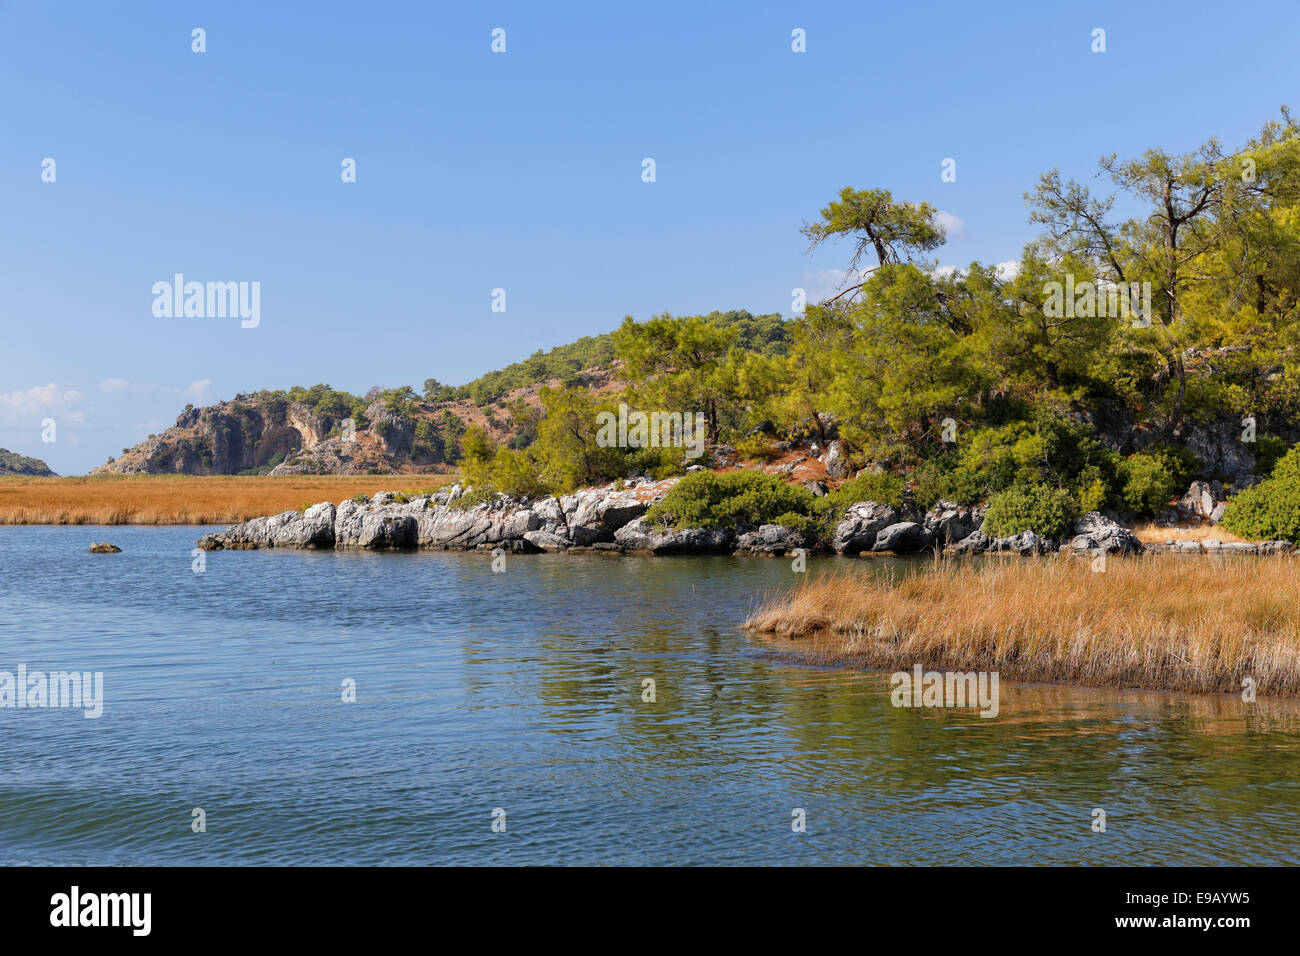 Dalyan Delta, Dalyan, Muğla Province, Turkish Riviera or Turquoise Coast, Aegean, Turkey Stock Photo